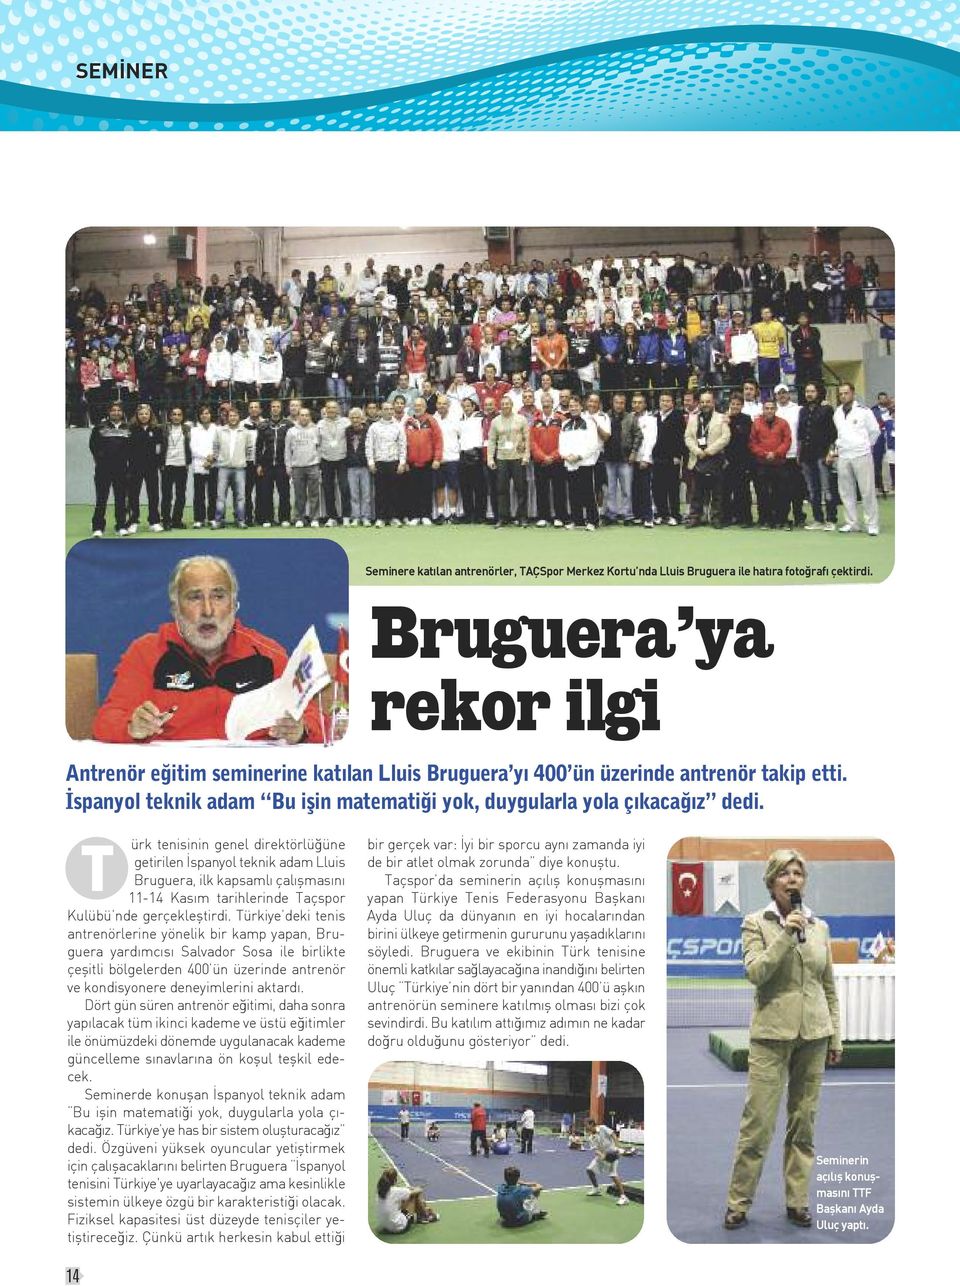 T ürk tenisinin genel direktörlüğüne getirilen İspanyol teknik adam Lluis Bruguera, ilk kapsamlı çalışmasını 11-14 Kasım tarihlerinde Taçspor Kulübü nde gerçekleştirdi.